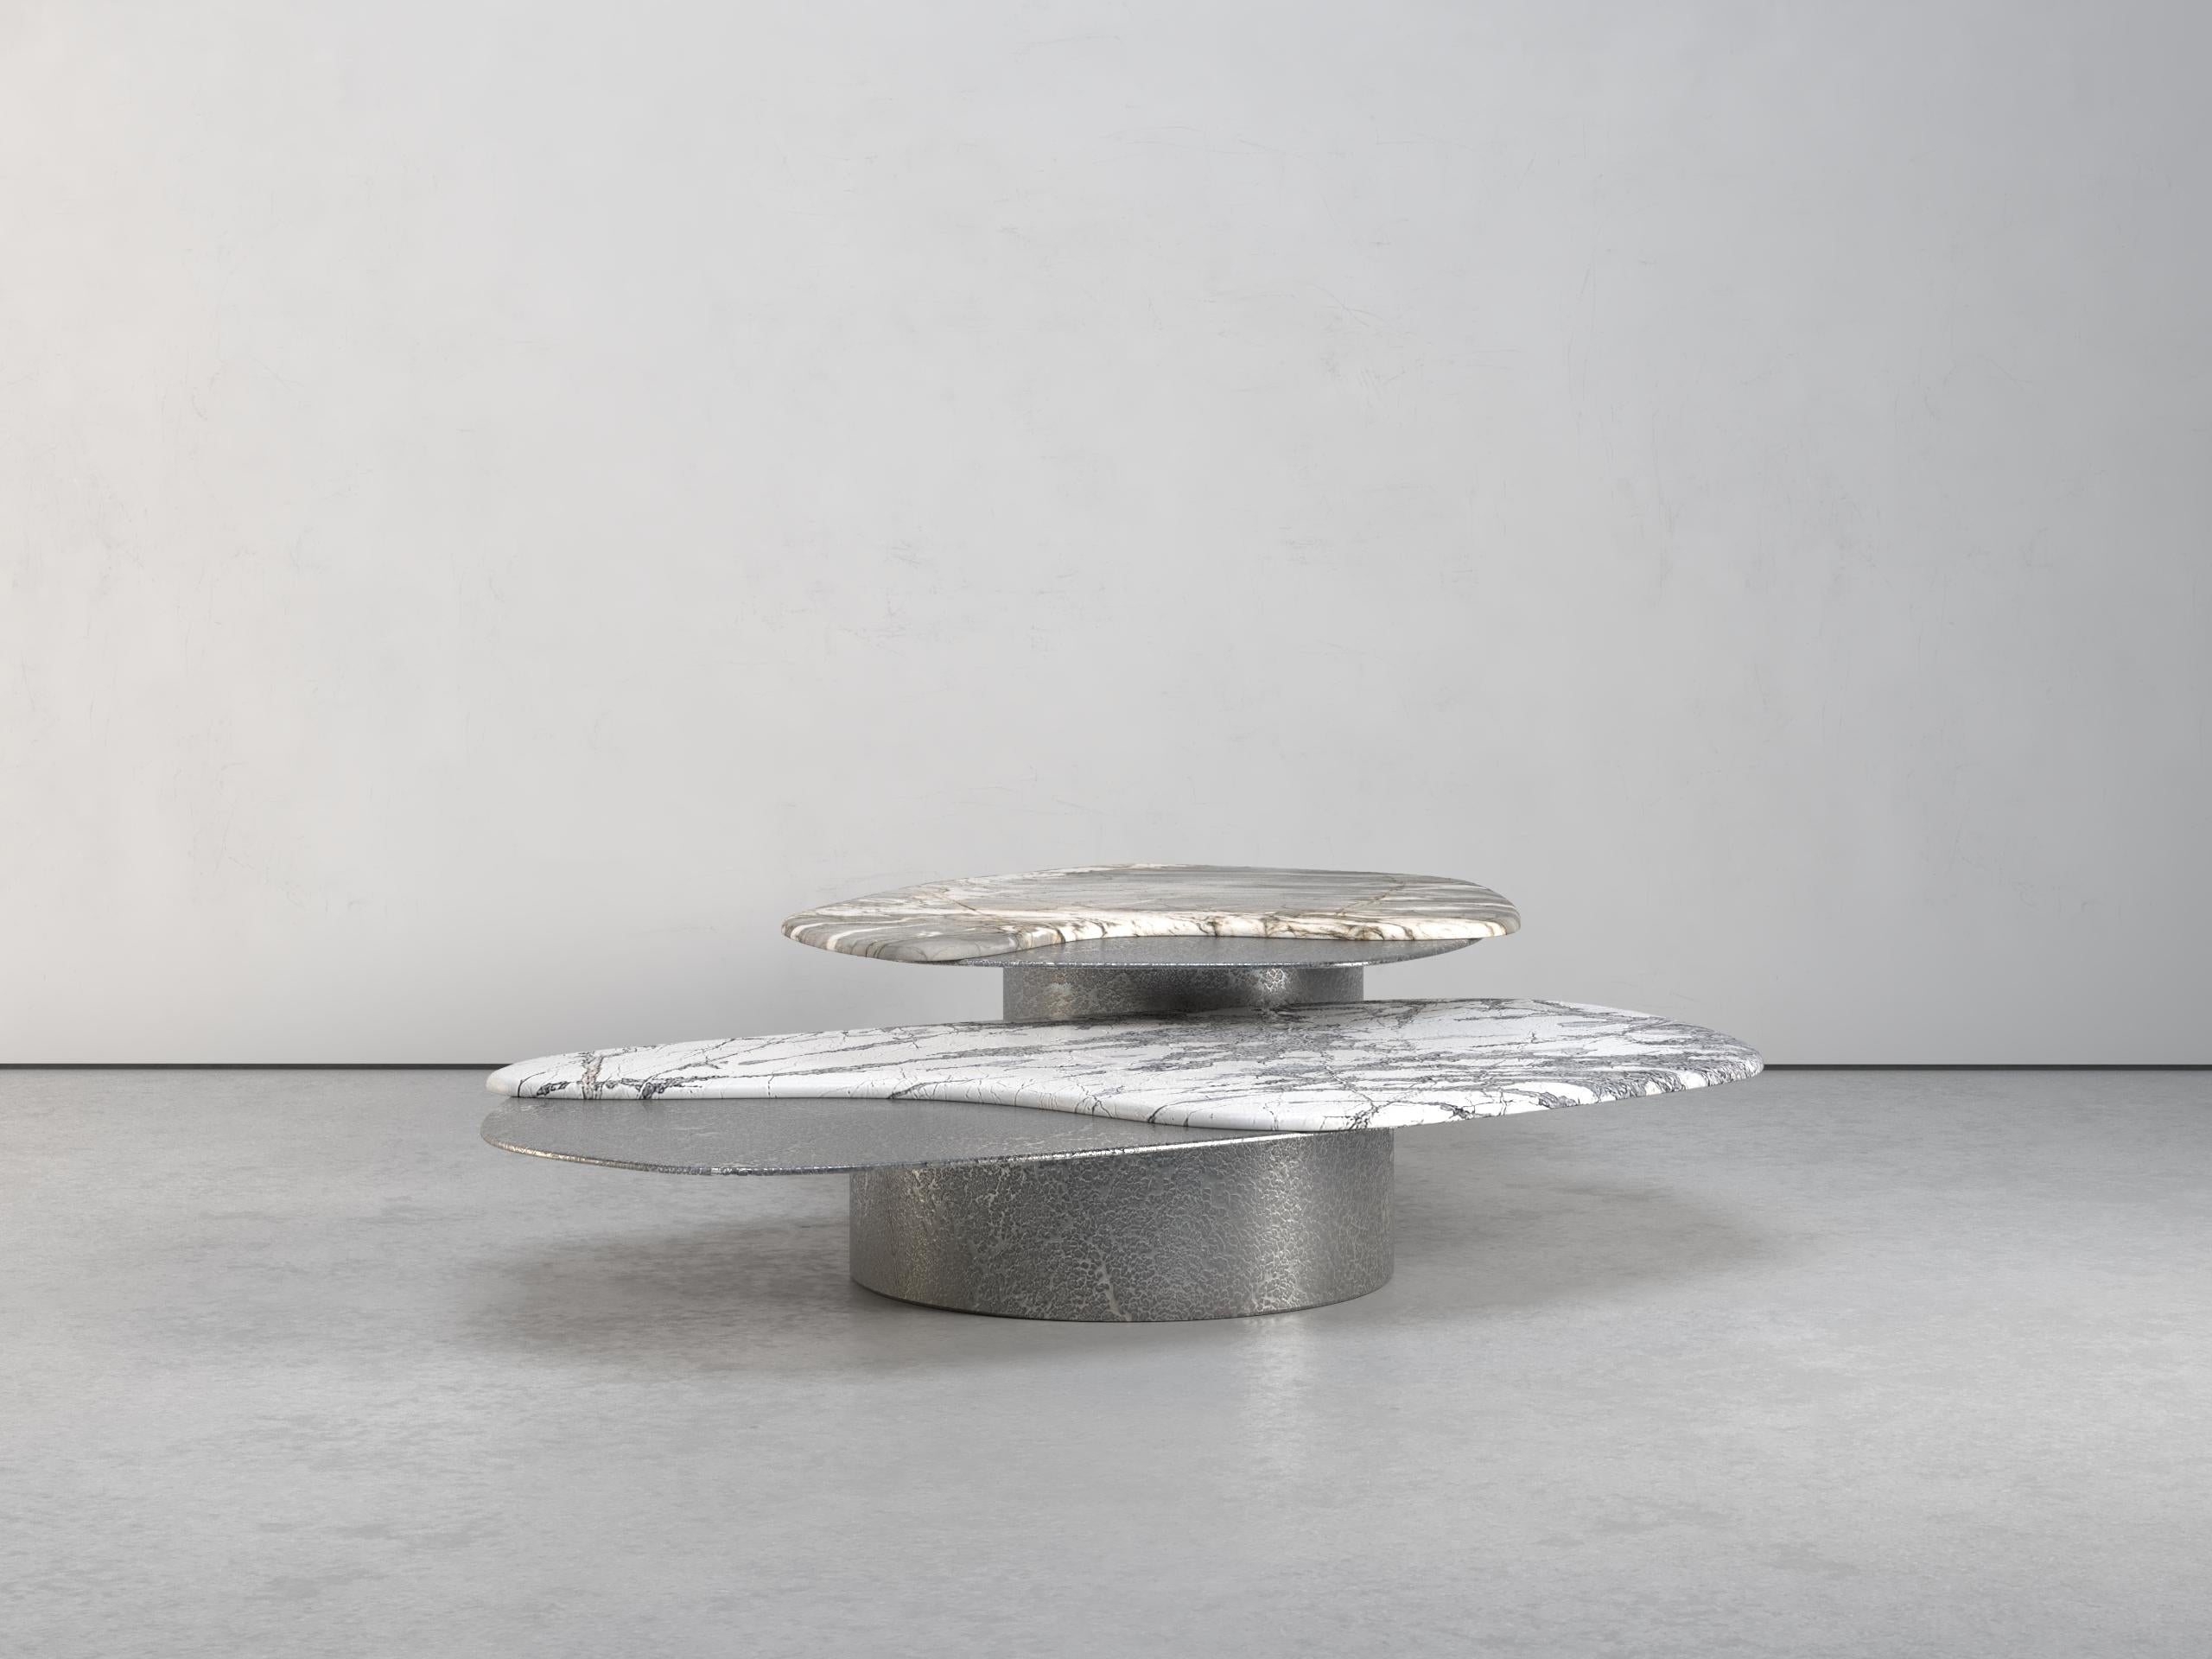 Ensemble de tables basses Epicure IV, 1 de 1 par Grzegorz Majka
Edition 1 de 1
Dimensions : 63 x 63 x 13 in
Matériaux : aluminium, quartz et laiton.

